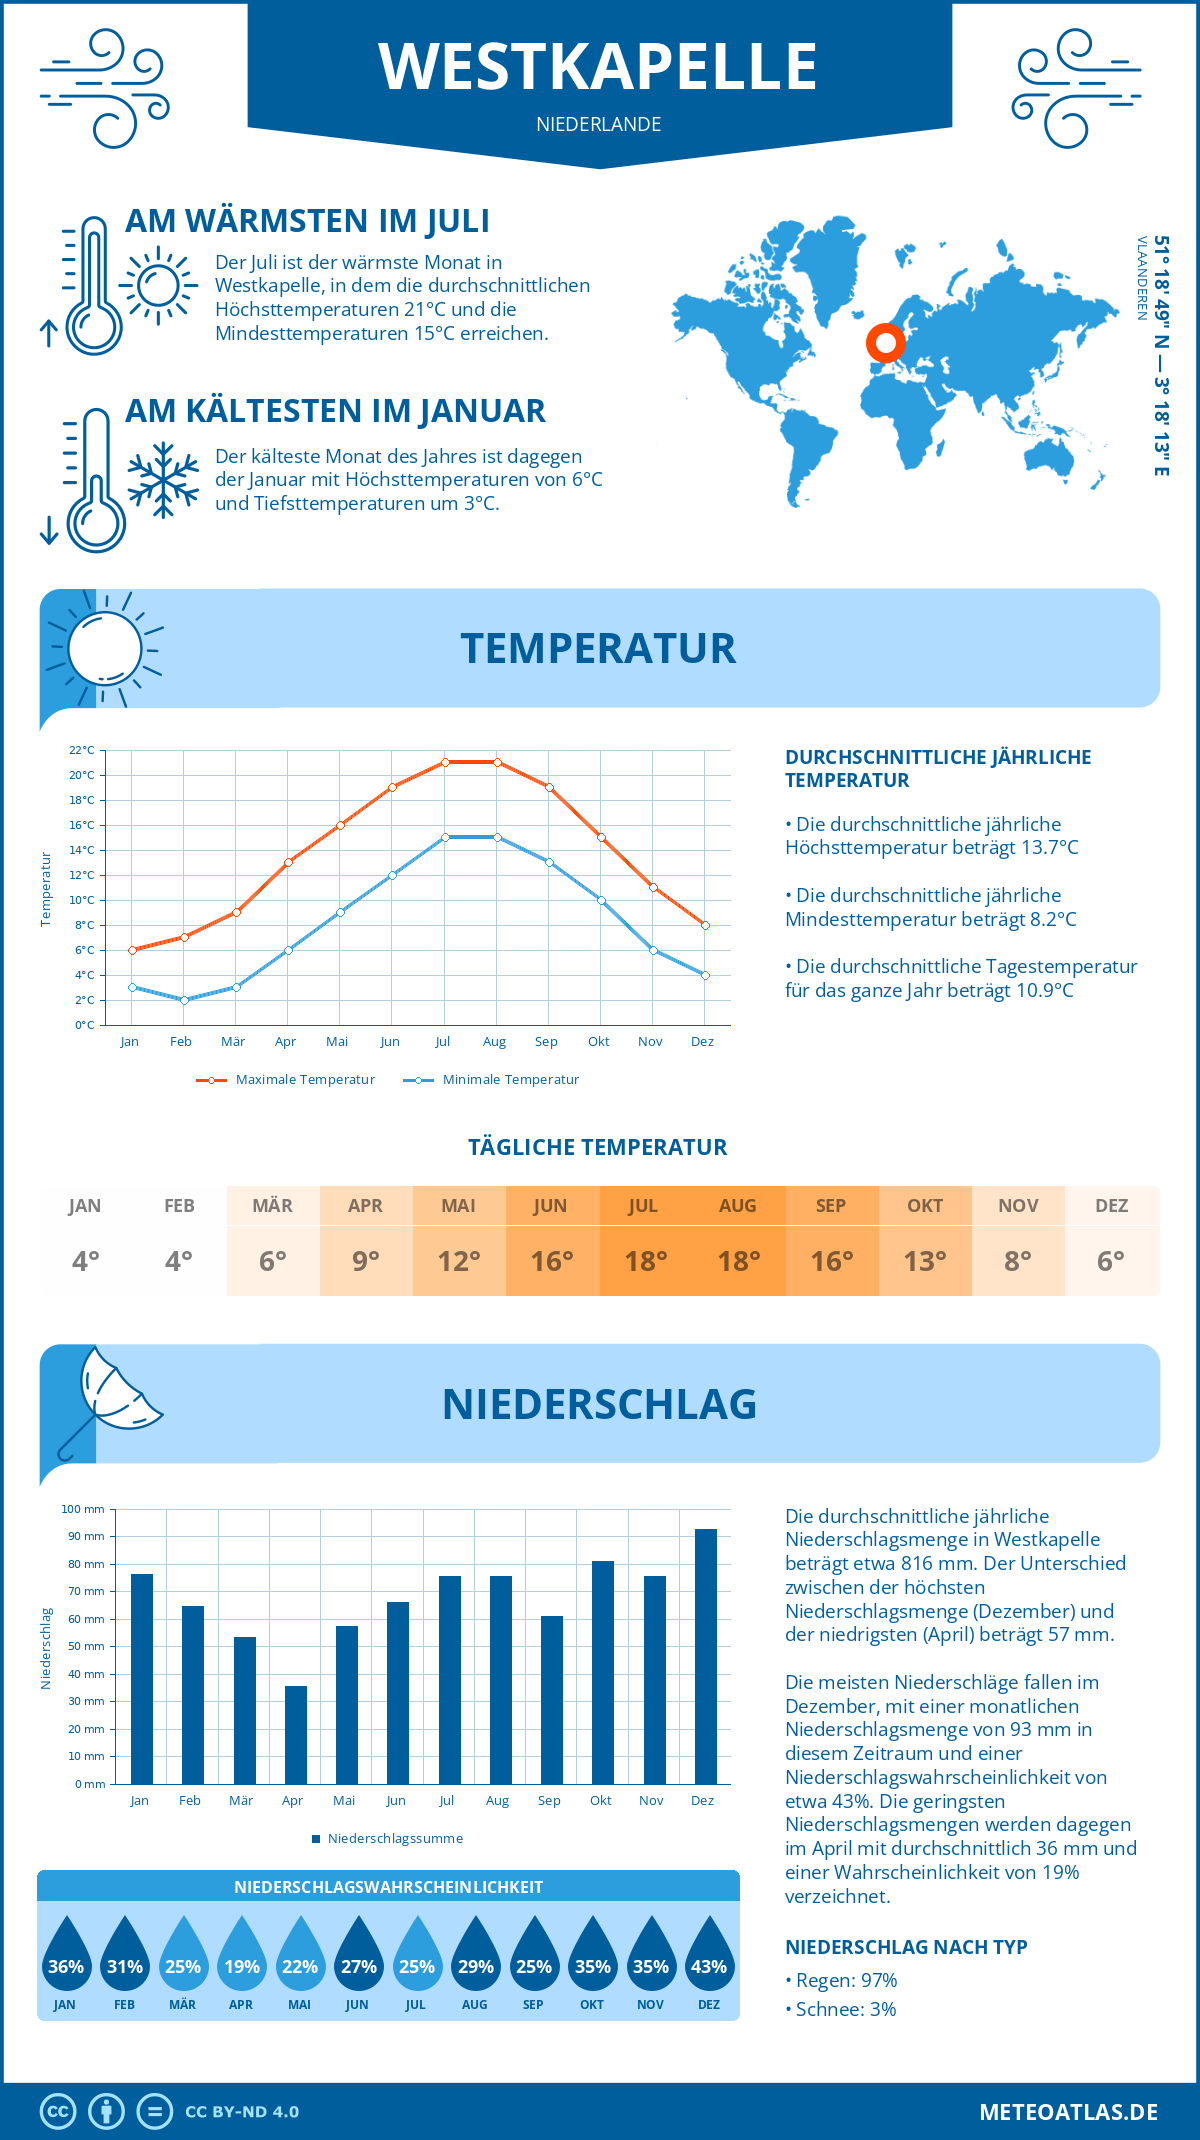 Wetter Westkapelle (Niederlande) - Temperatur und Niederschlag